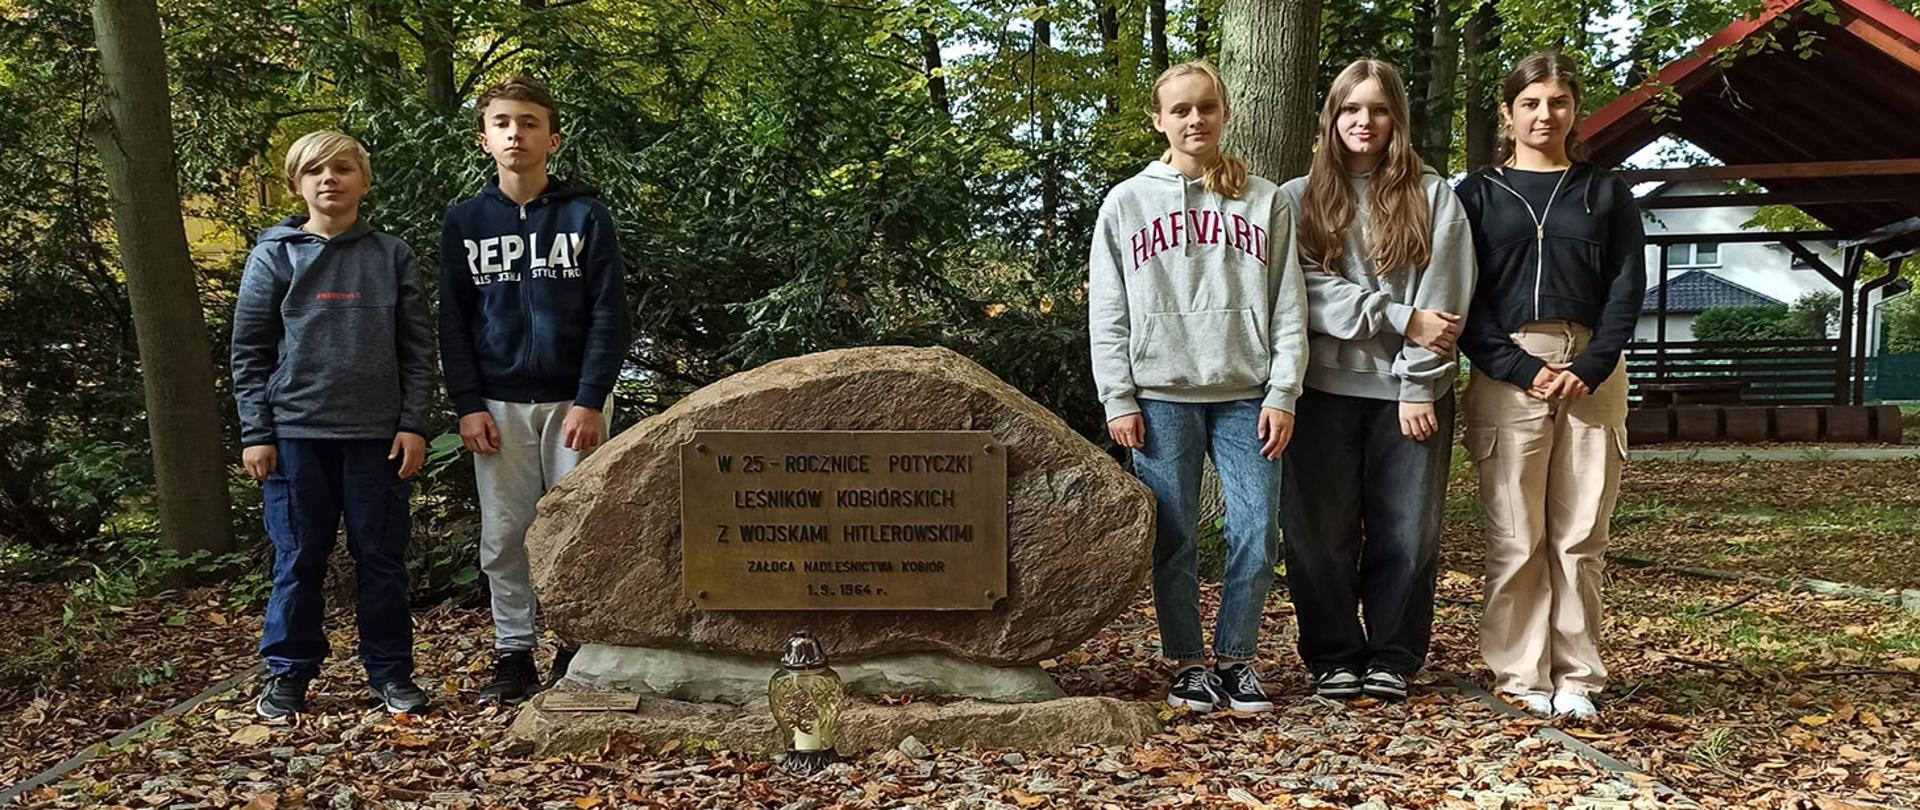 Grupa uczniów stojąca przy głazie upamiętniającym potyczkę leśników z hitlerowcami